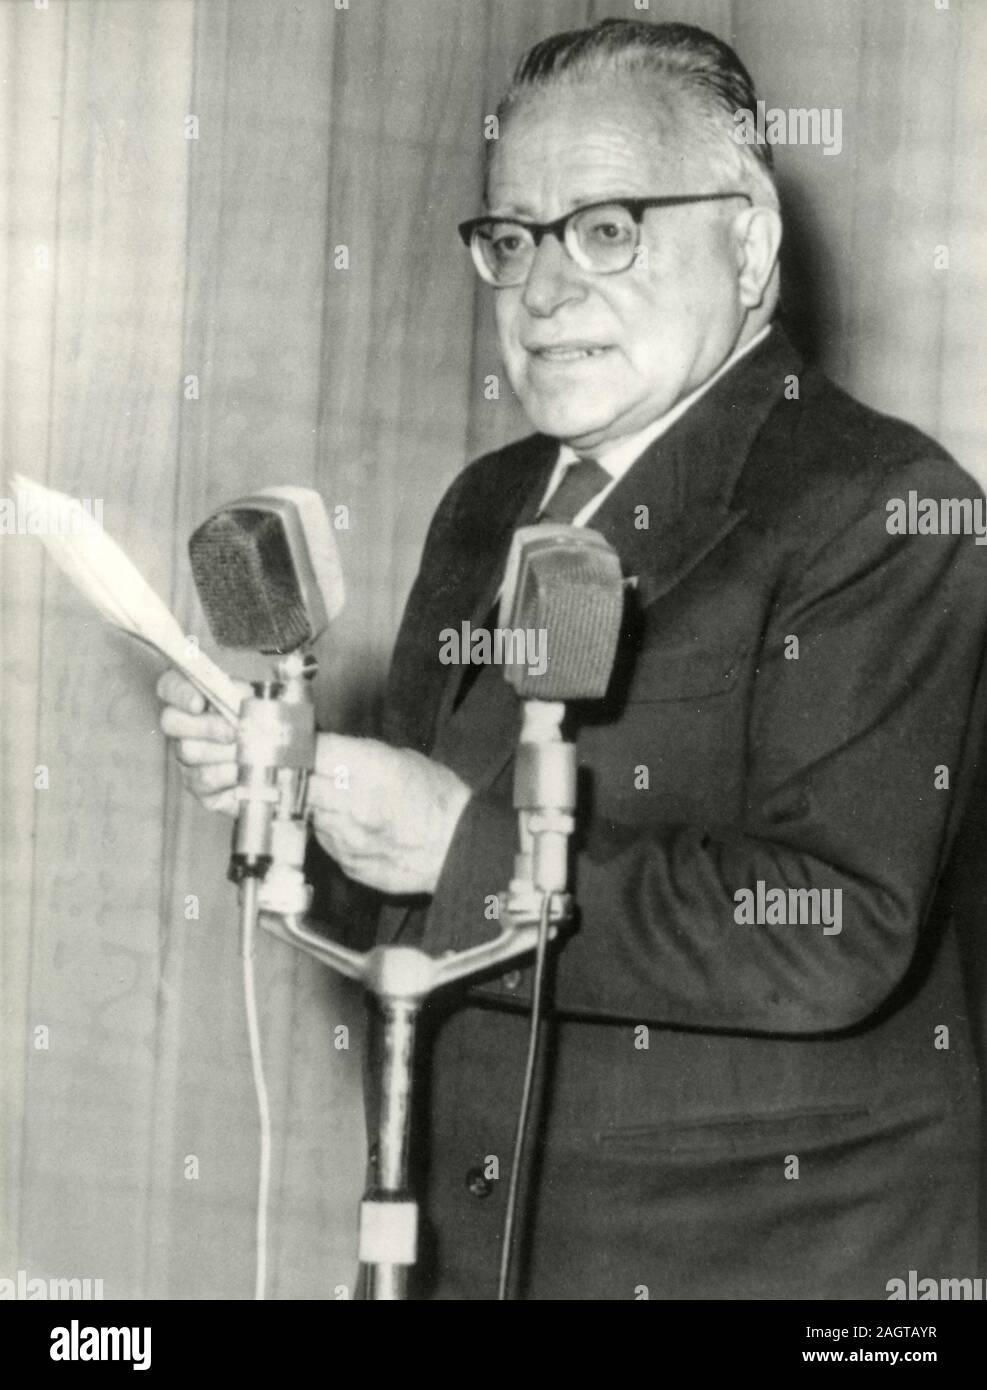 Político italiano Palmiro Togliatti, durante una conferencia de prensa, Italia 1960 Foto de stock